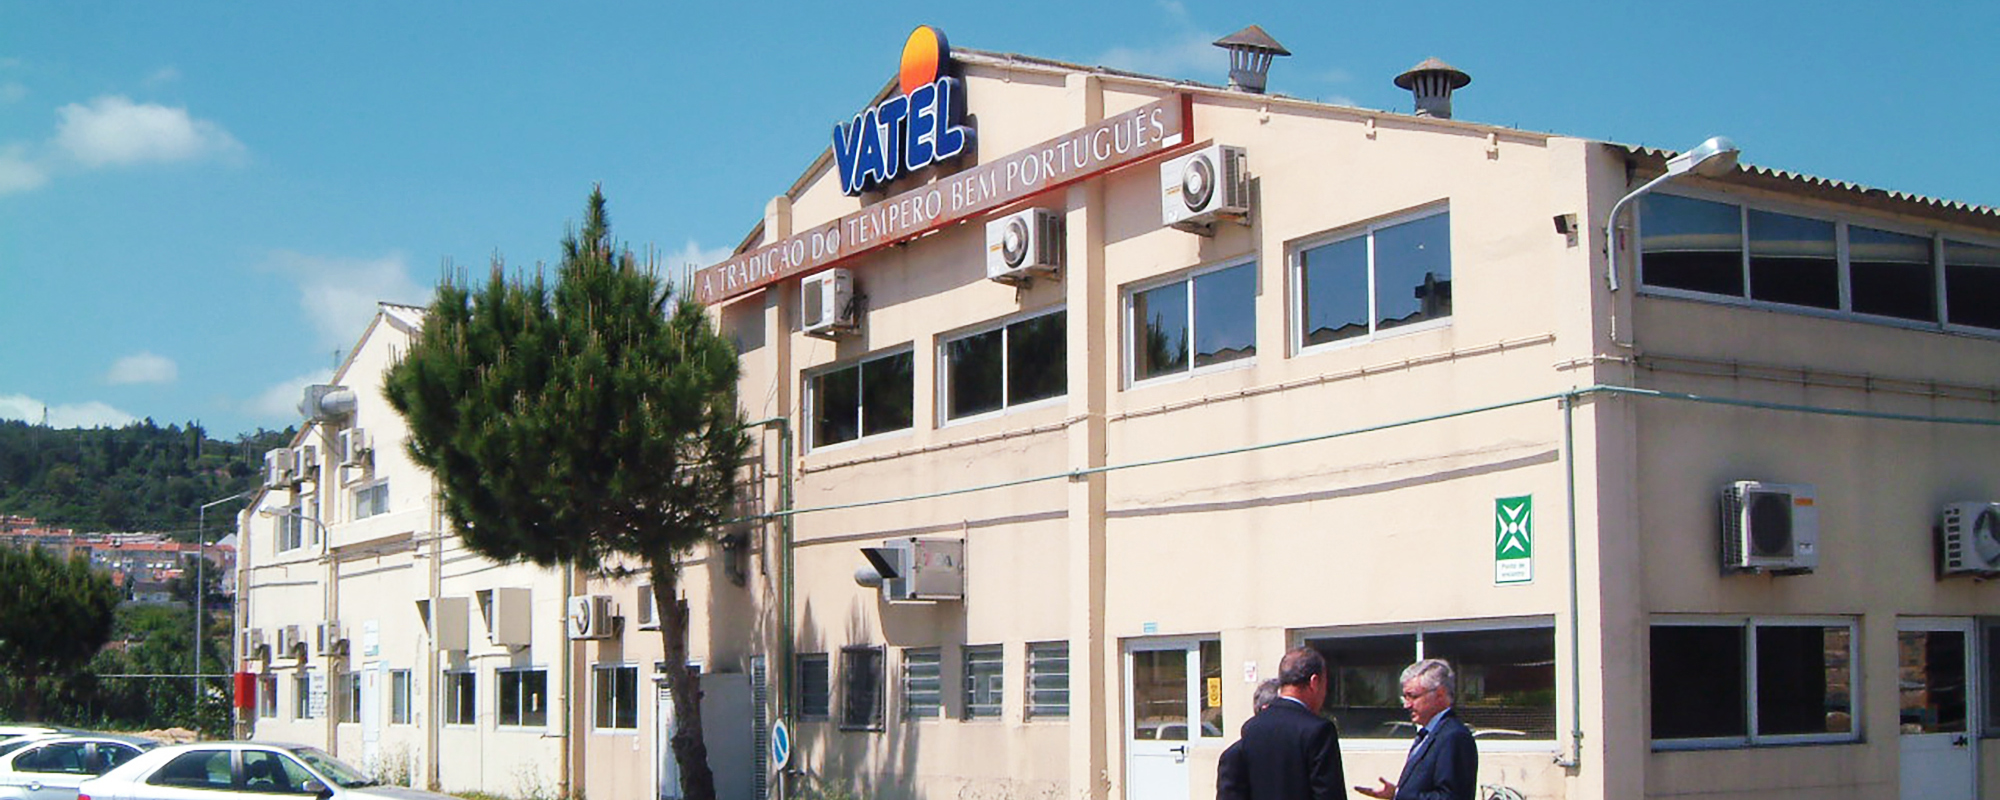 Firmengebäude von der Gesellschaft Vatel am Standort Alverca in Portugal